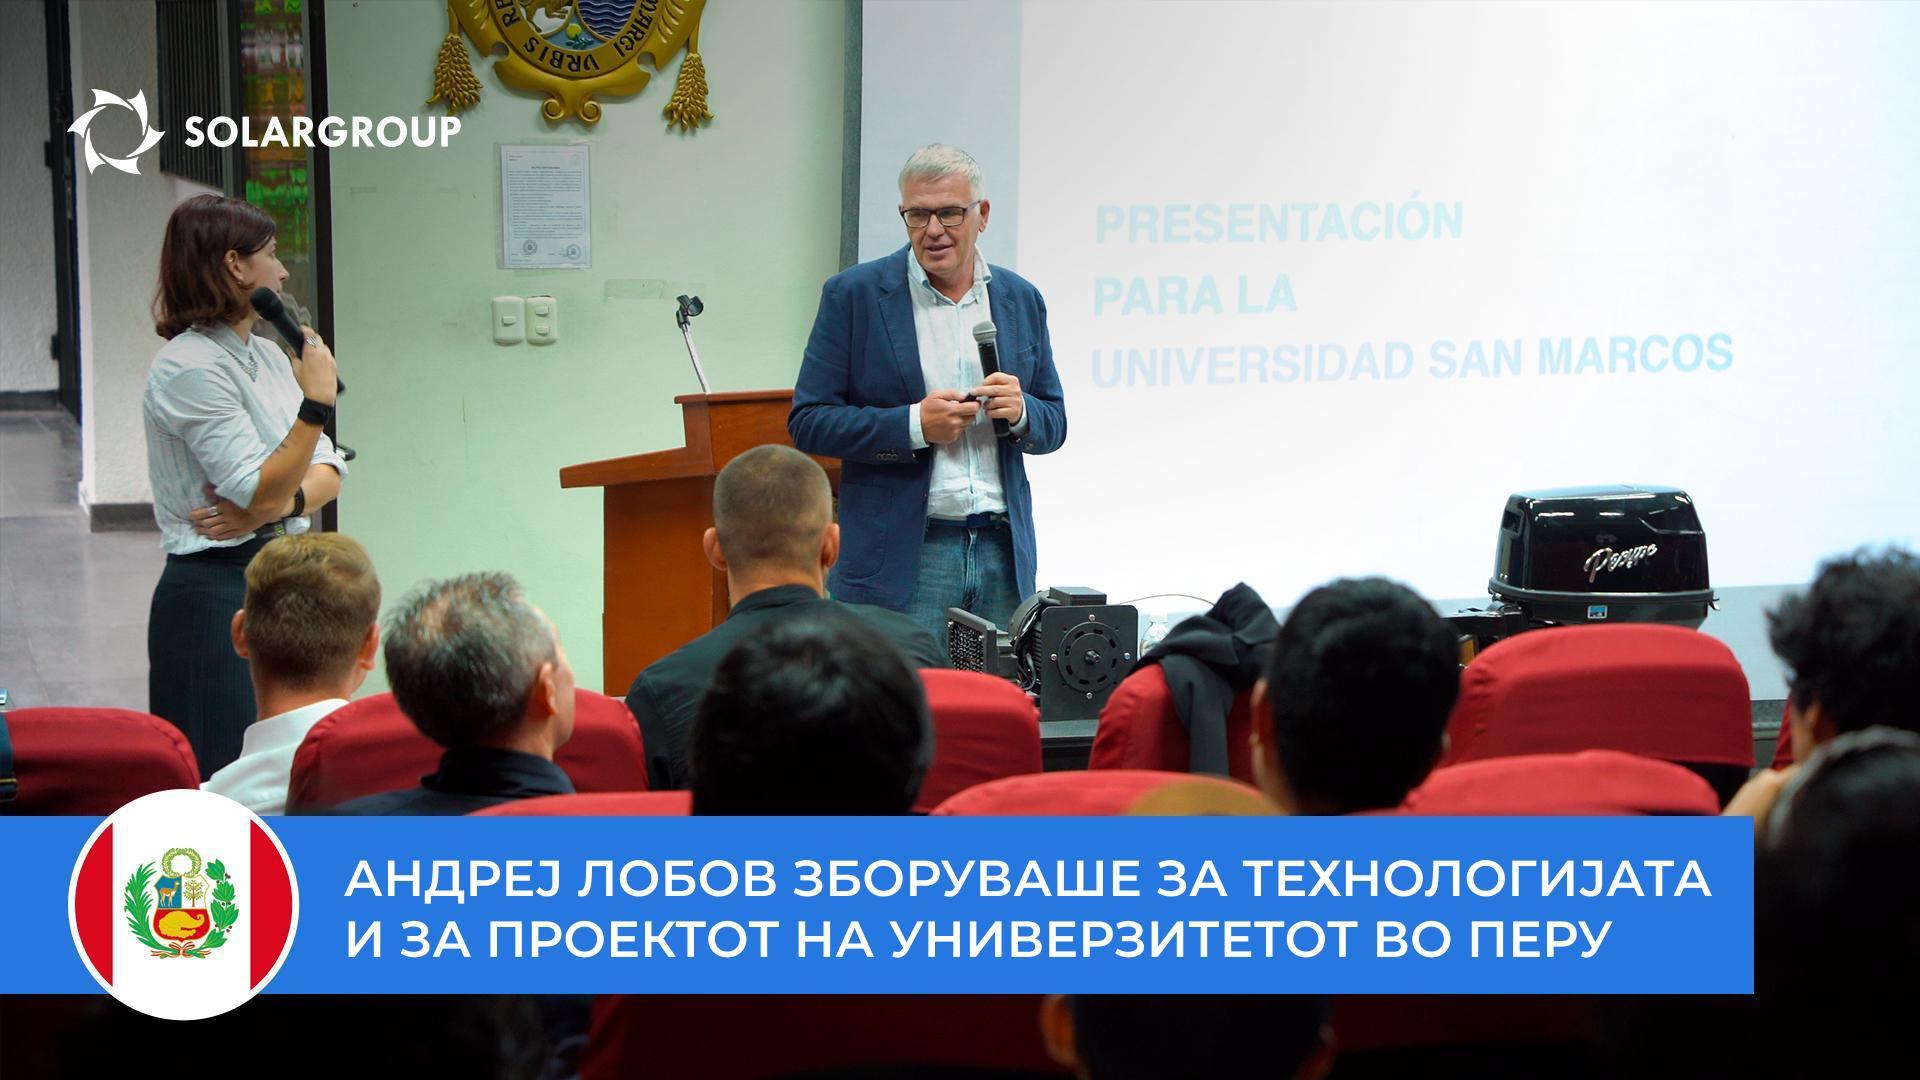 Андреј Лобов зборуваше за технологијата и за проектот пред студентите и професорите на универзитетот Сан Маркос